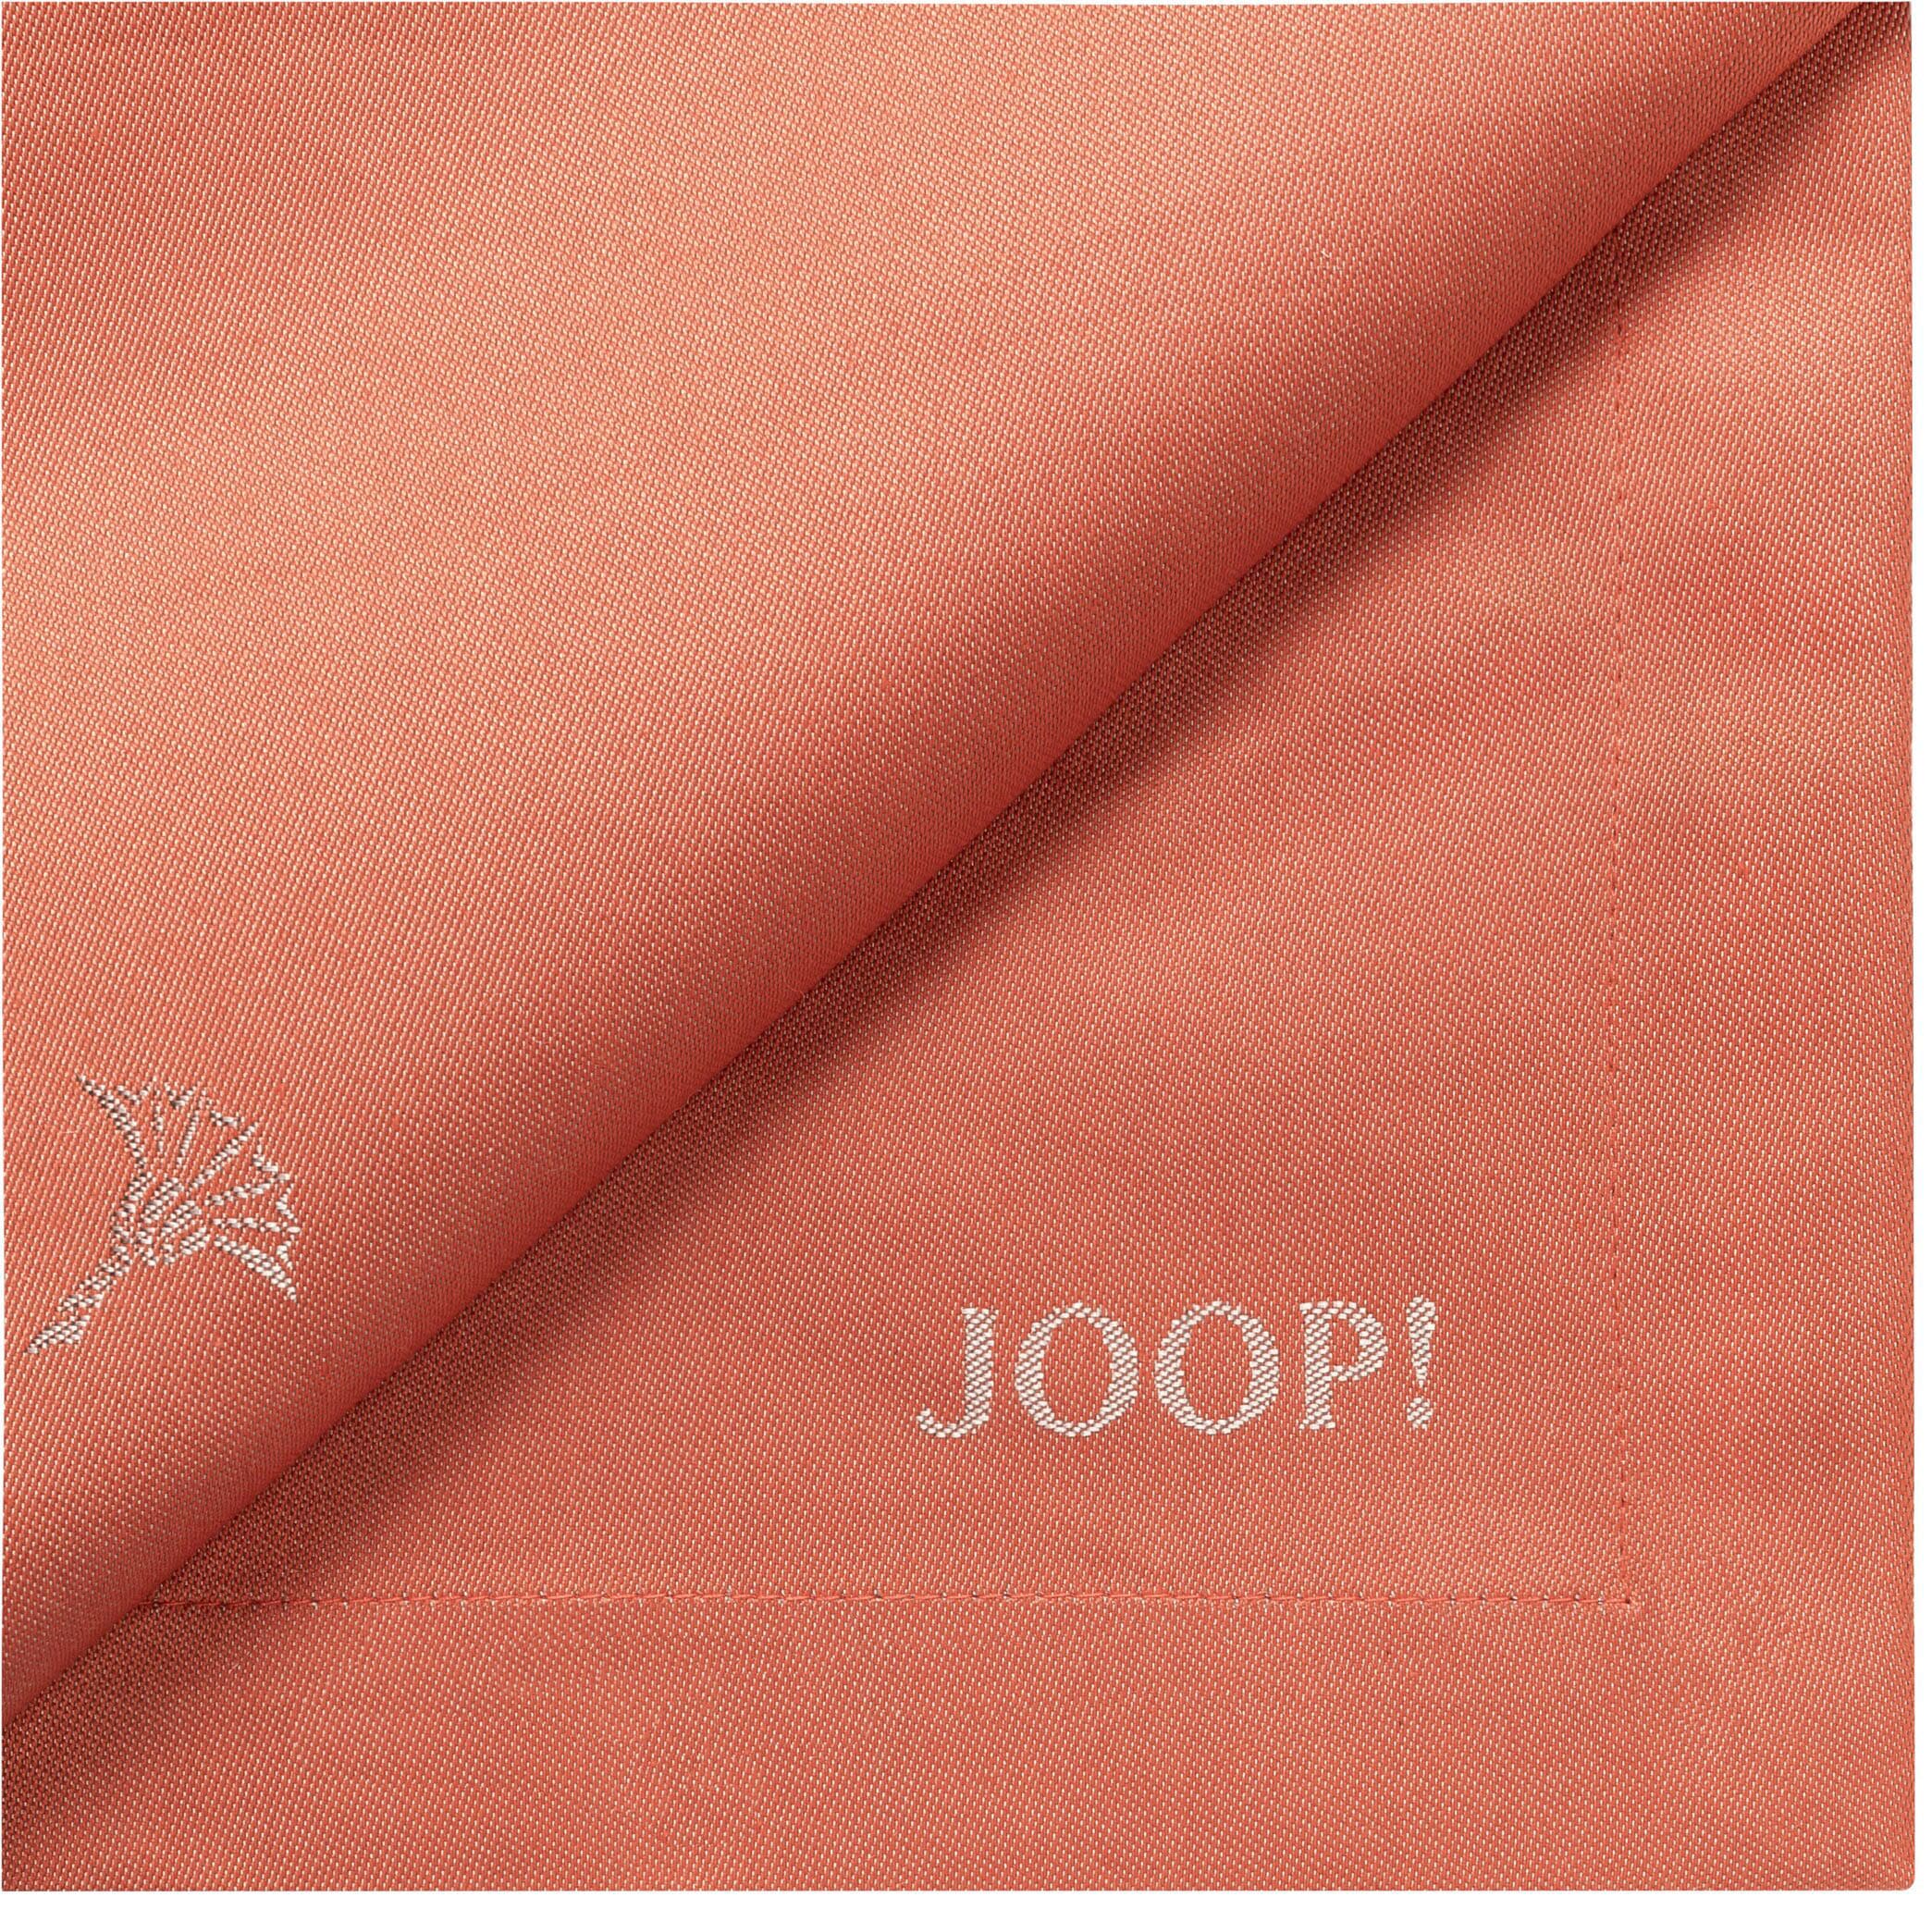 JOOP! Tischläufer »FADED CORNFLOWER«, (1 St.), aus Jacquard-Gewebe gefertigt mit Kornblumen-Verlauf